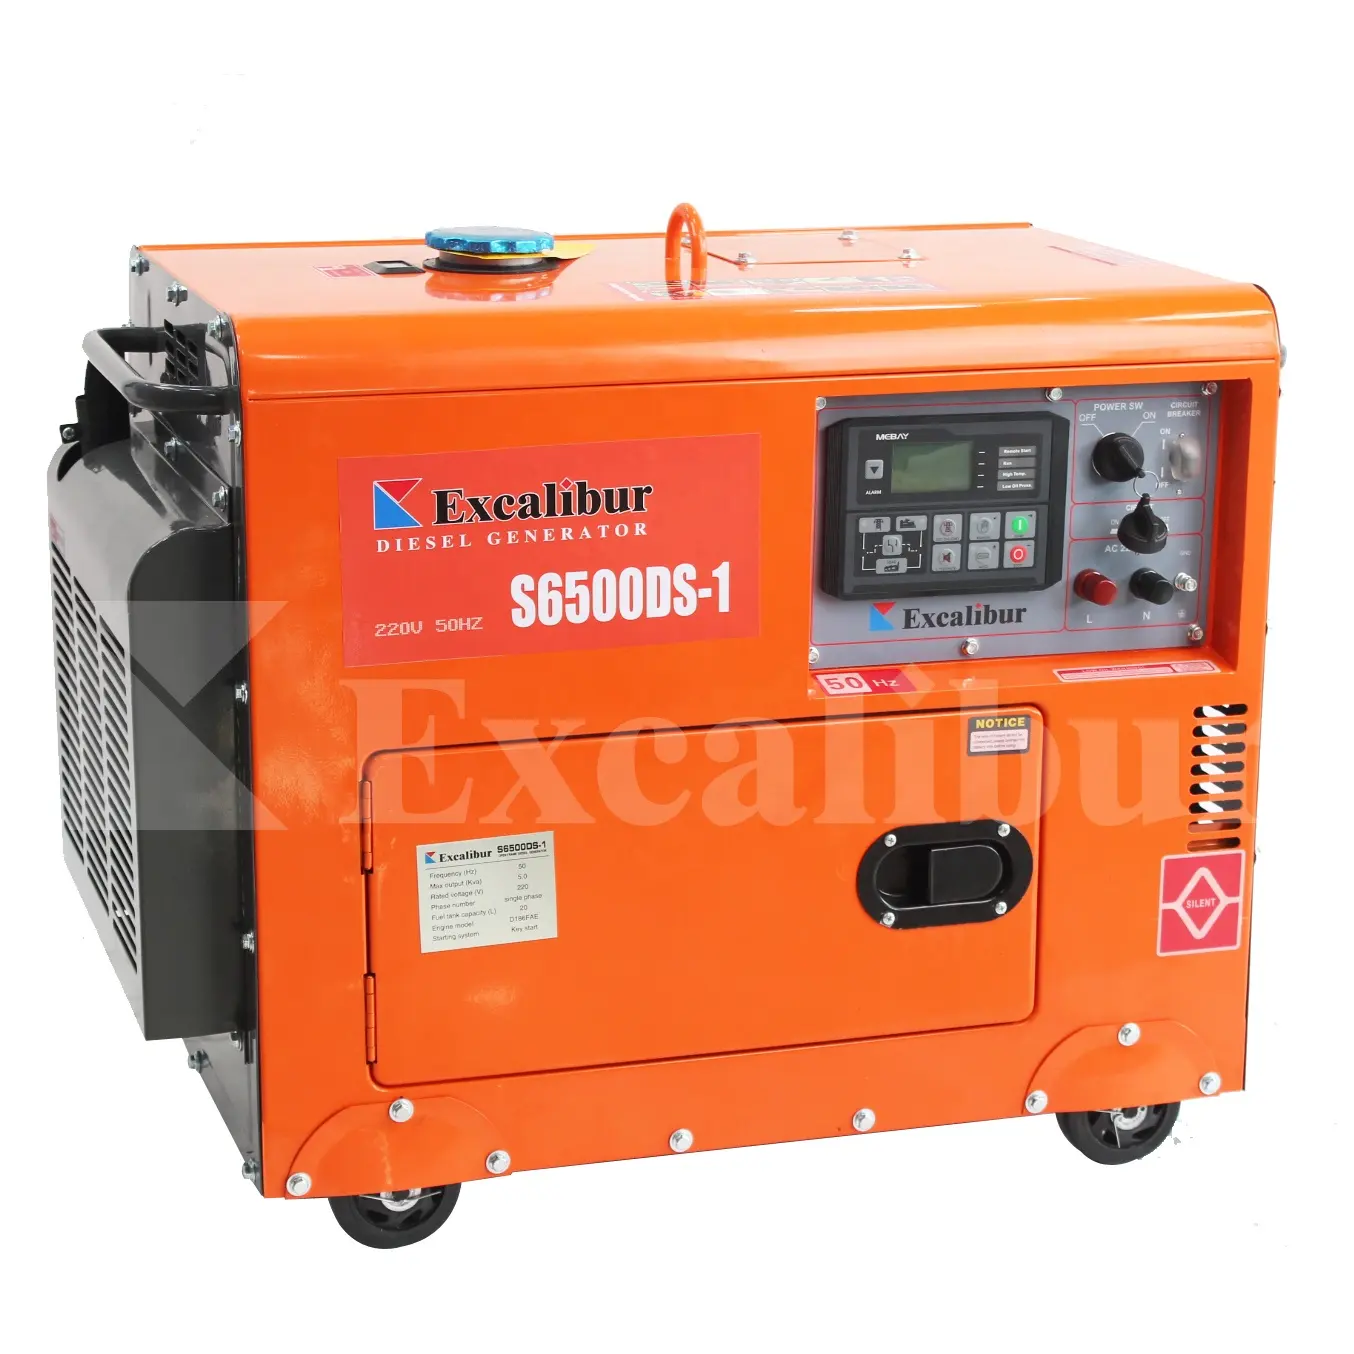 3kw 5kw 6kw 7kw 8kw generatore diesel generatore elettrostatico prezzo generatori diesel elettrici silenziosi portatili